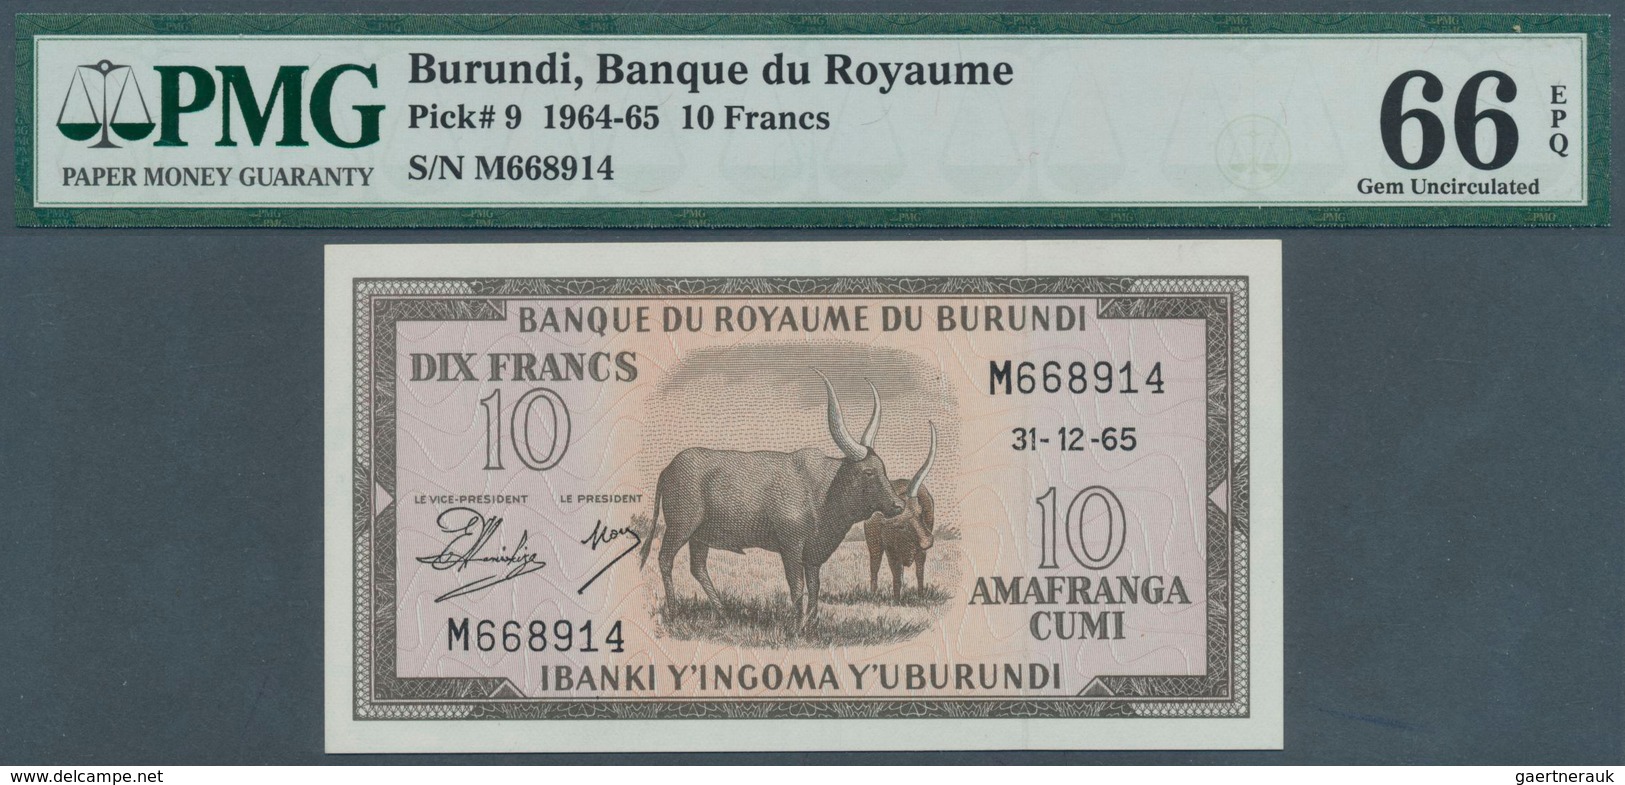 01236 Burundi: 10 Francs 1965 P. 9, Condition: PMG Graded 66 GEM UNC EPQ. - Burundi